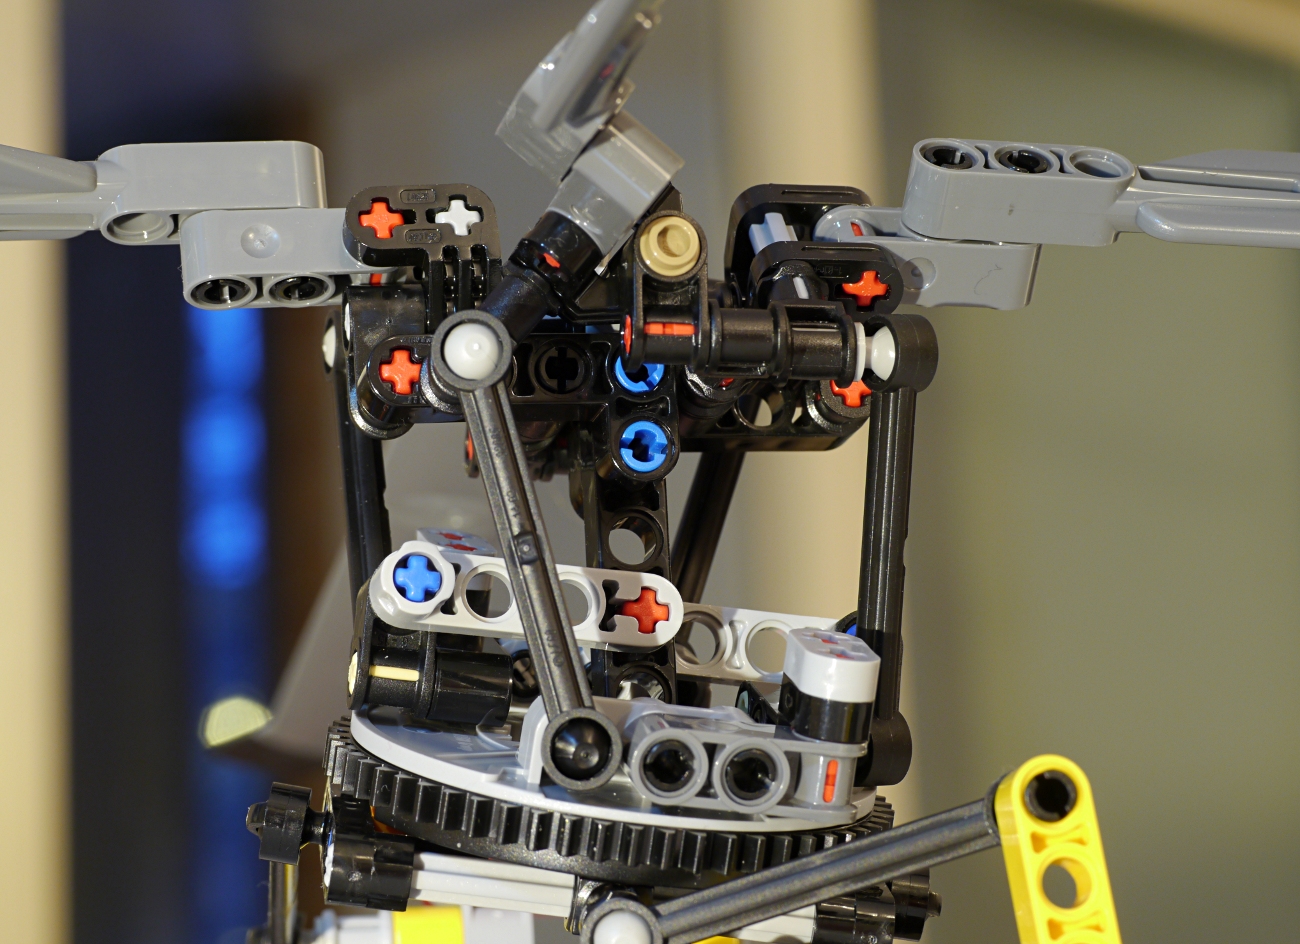  Helicopter  LEGO Technic, Mindstorms amp; Model Team  Eurobricks Forums